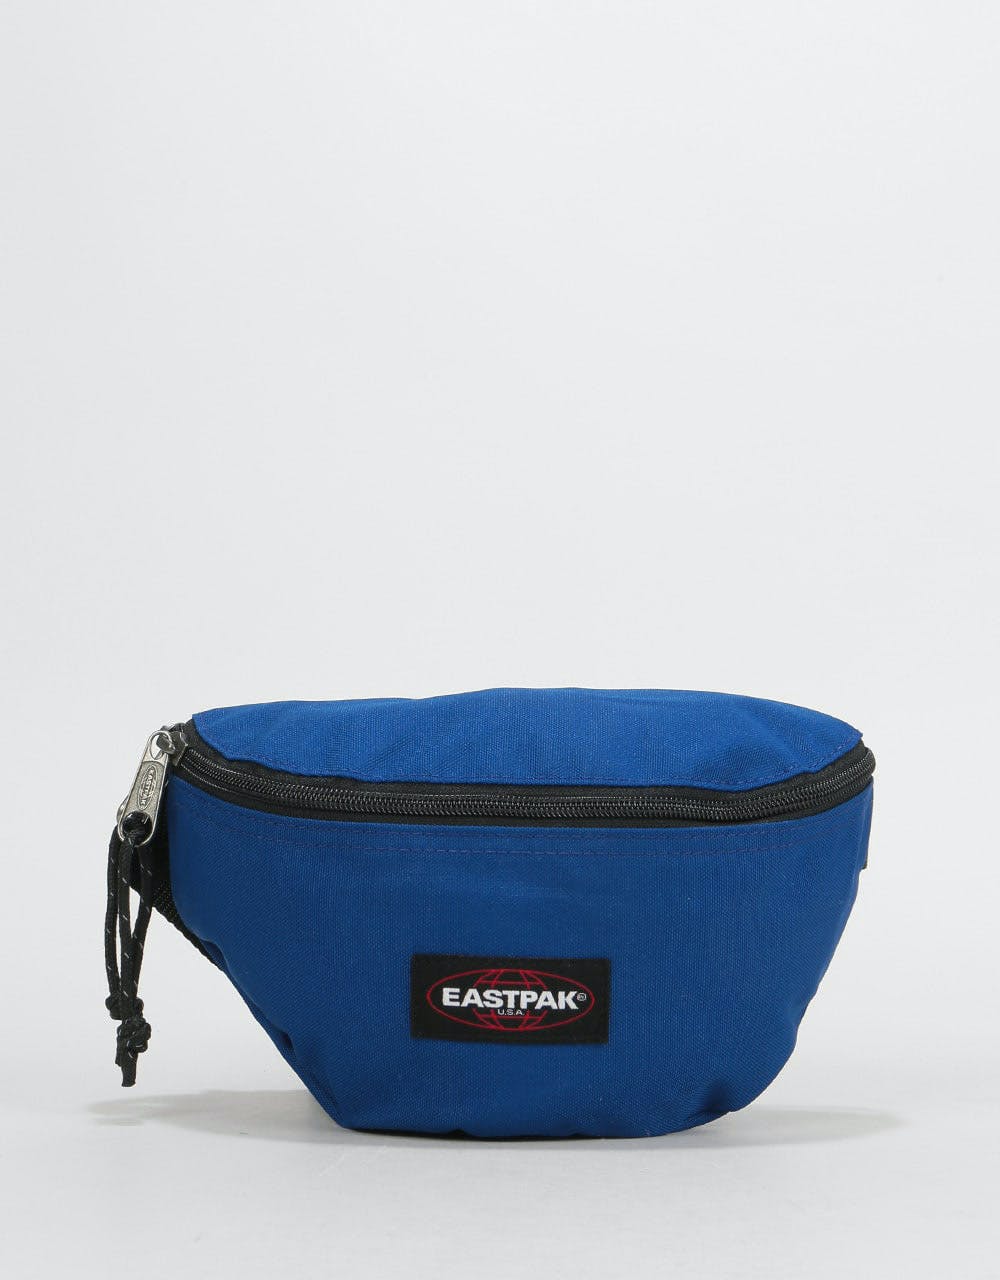 Eastpak Springer Cross Body Bag - Bonded Bleu